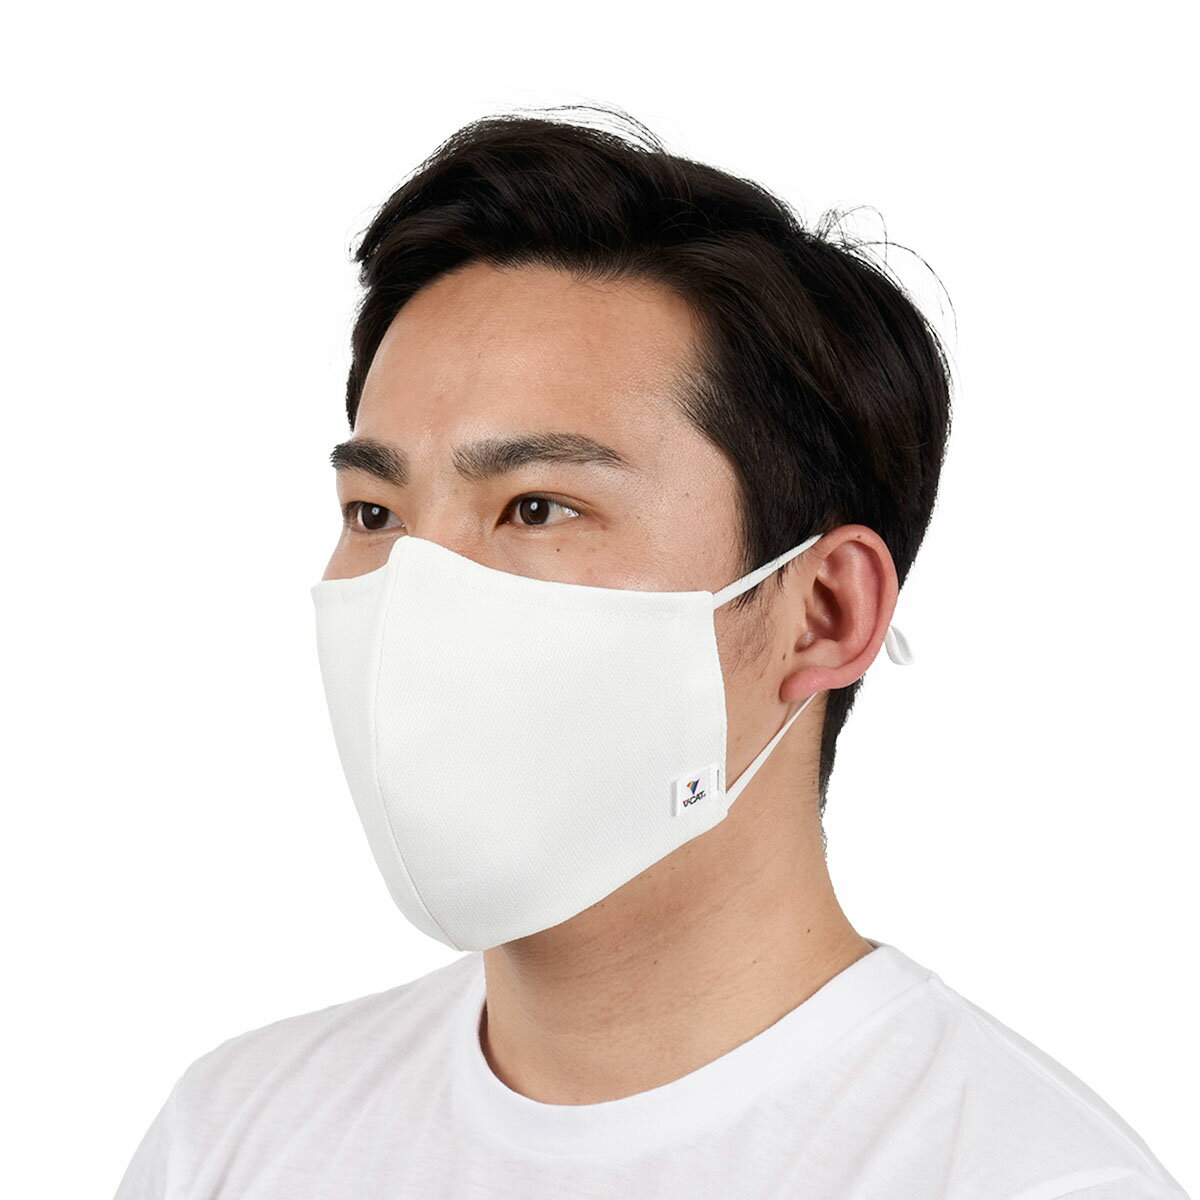 福助 公式 マスク 洗える 肌に優しい 洗って使える 光触媒 V-CAT 足袋工場で作ったマスク 大き目サイズ 1枚入 9007-000Lサイズ 大きめ 感染対策 予防 風邪 ウイルス レディース メンズ 女性 男性 綿 綿100％ ワイヤー入り 日本製